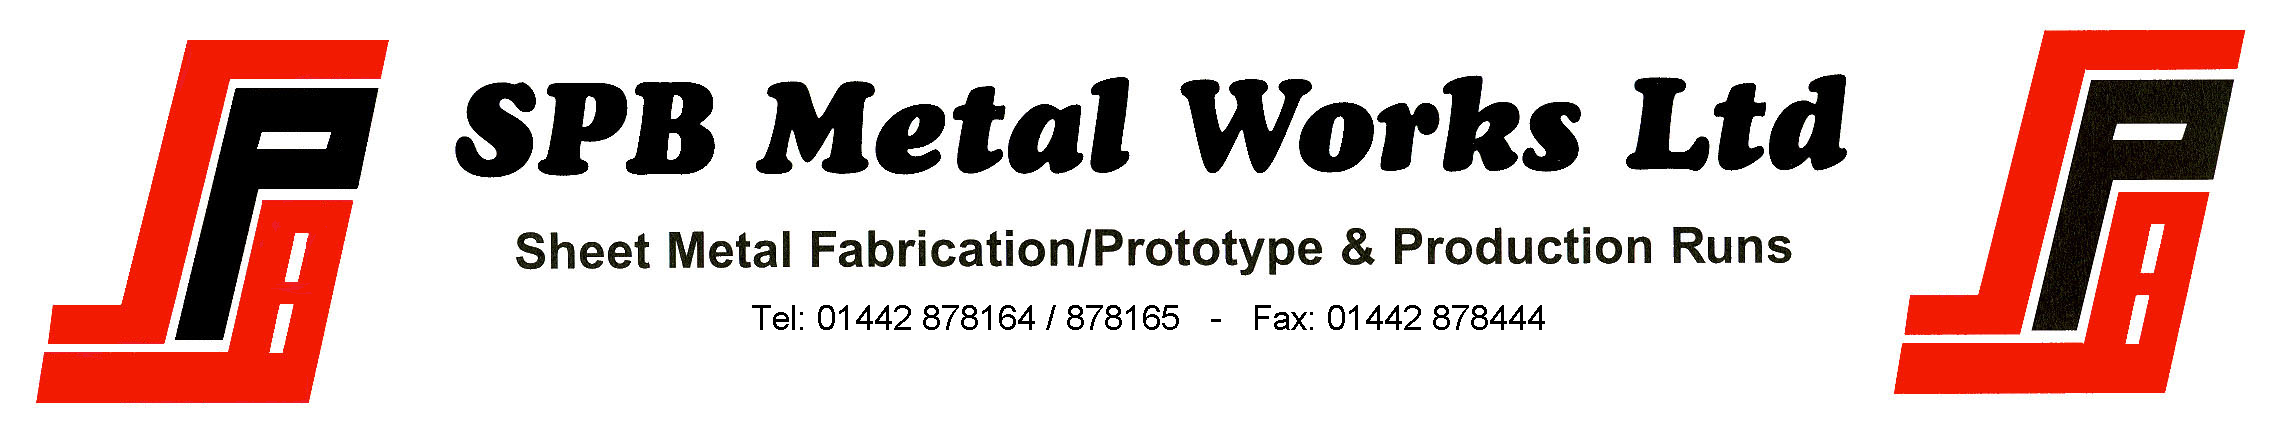 SPB Metal Works Ltd